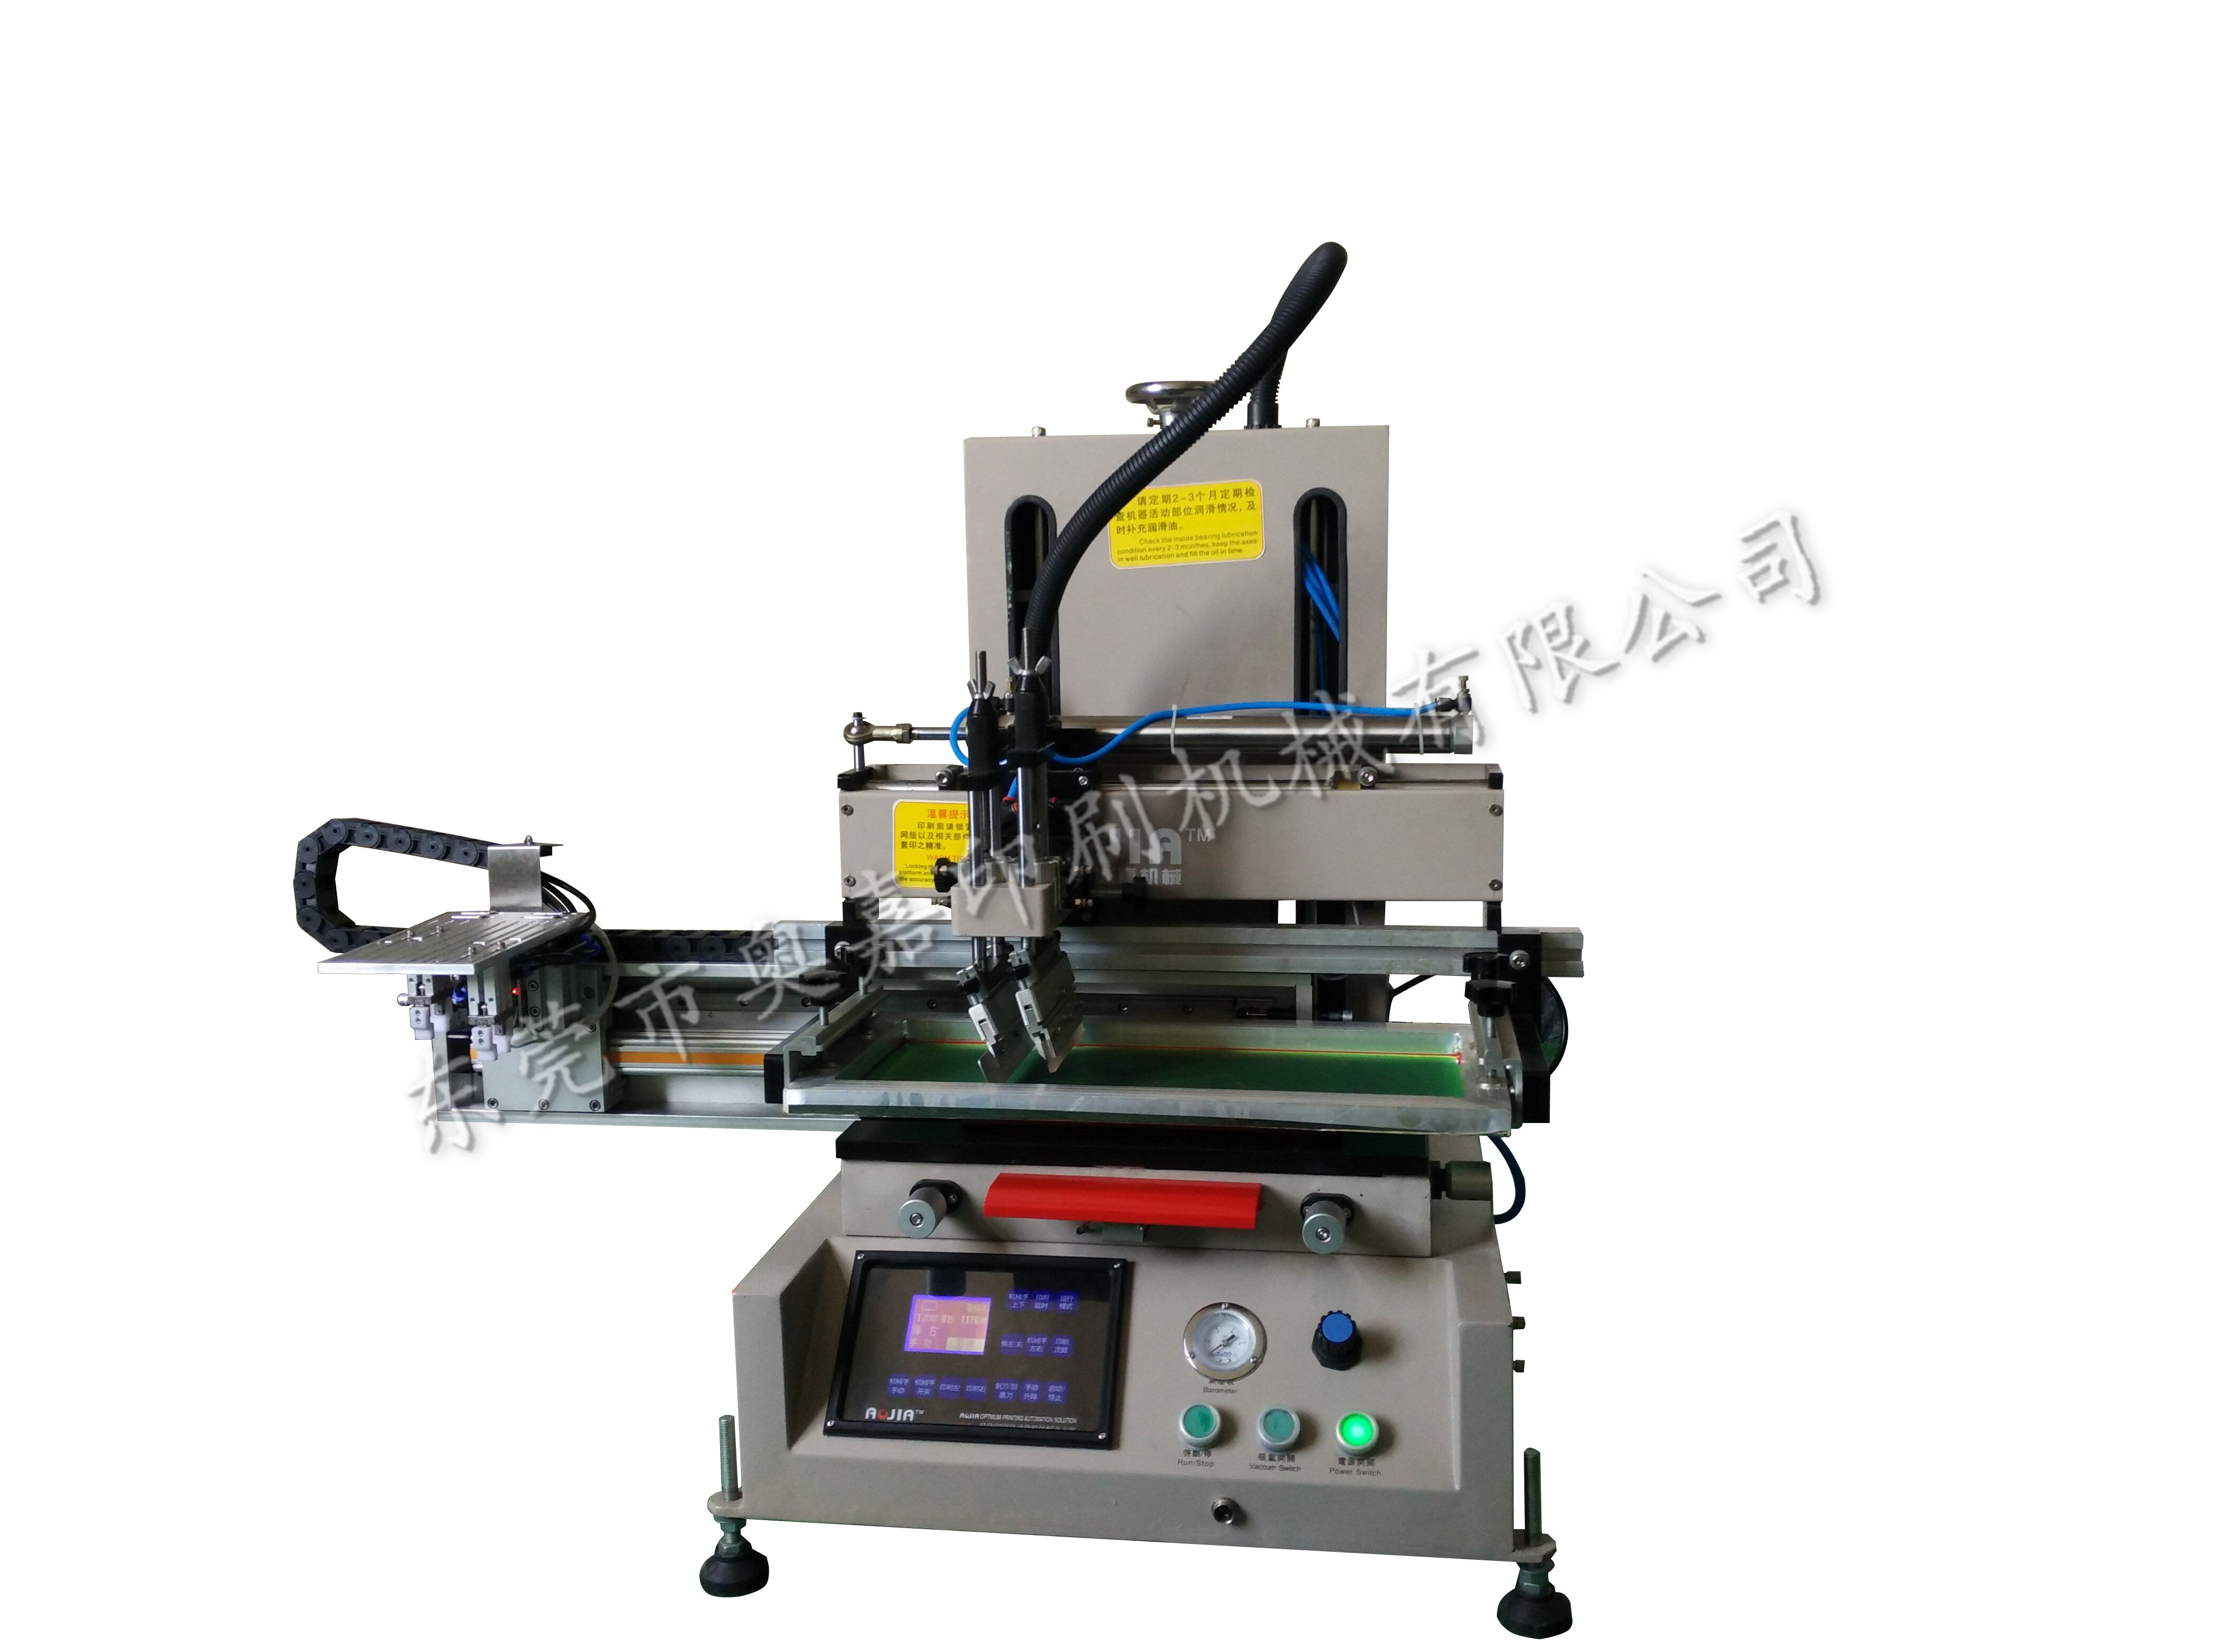 东莞市便宜的尺子丝印机厂家便宜的尺子丝印机/尺子印刷机/套尺丝印机/丝印机价格/丝印机维修